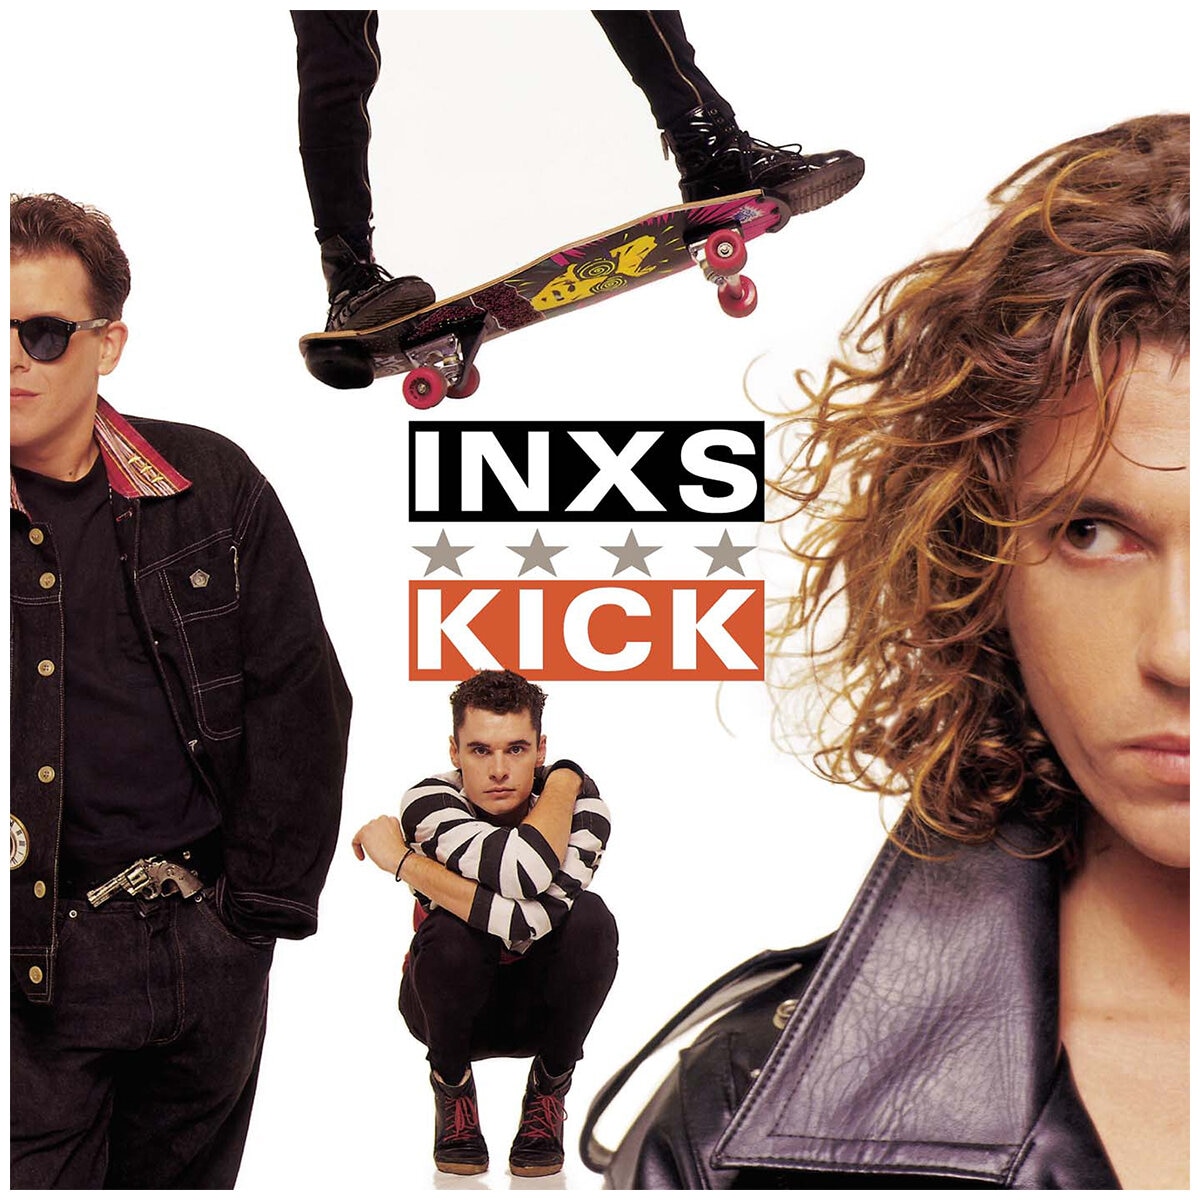 inxs kick tour australia